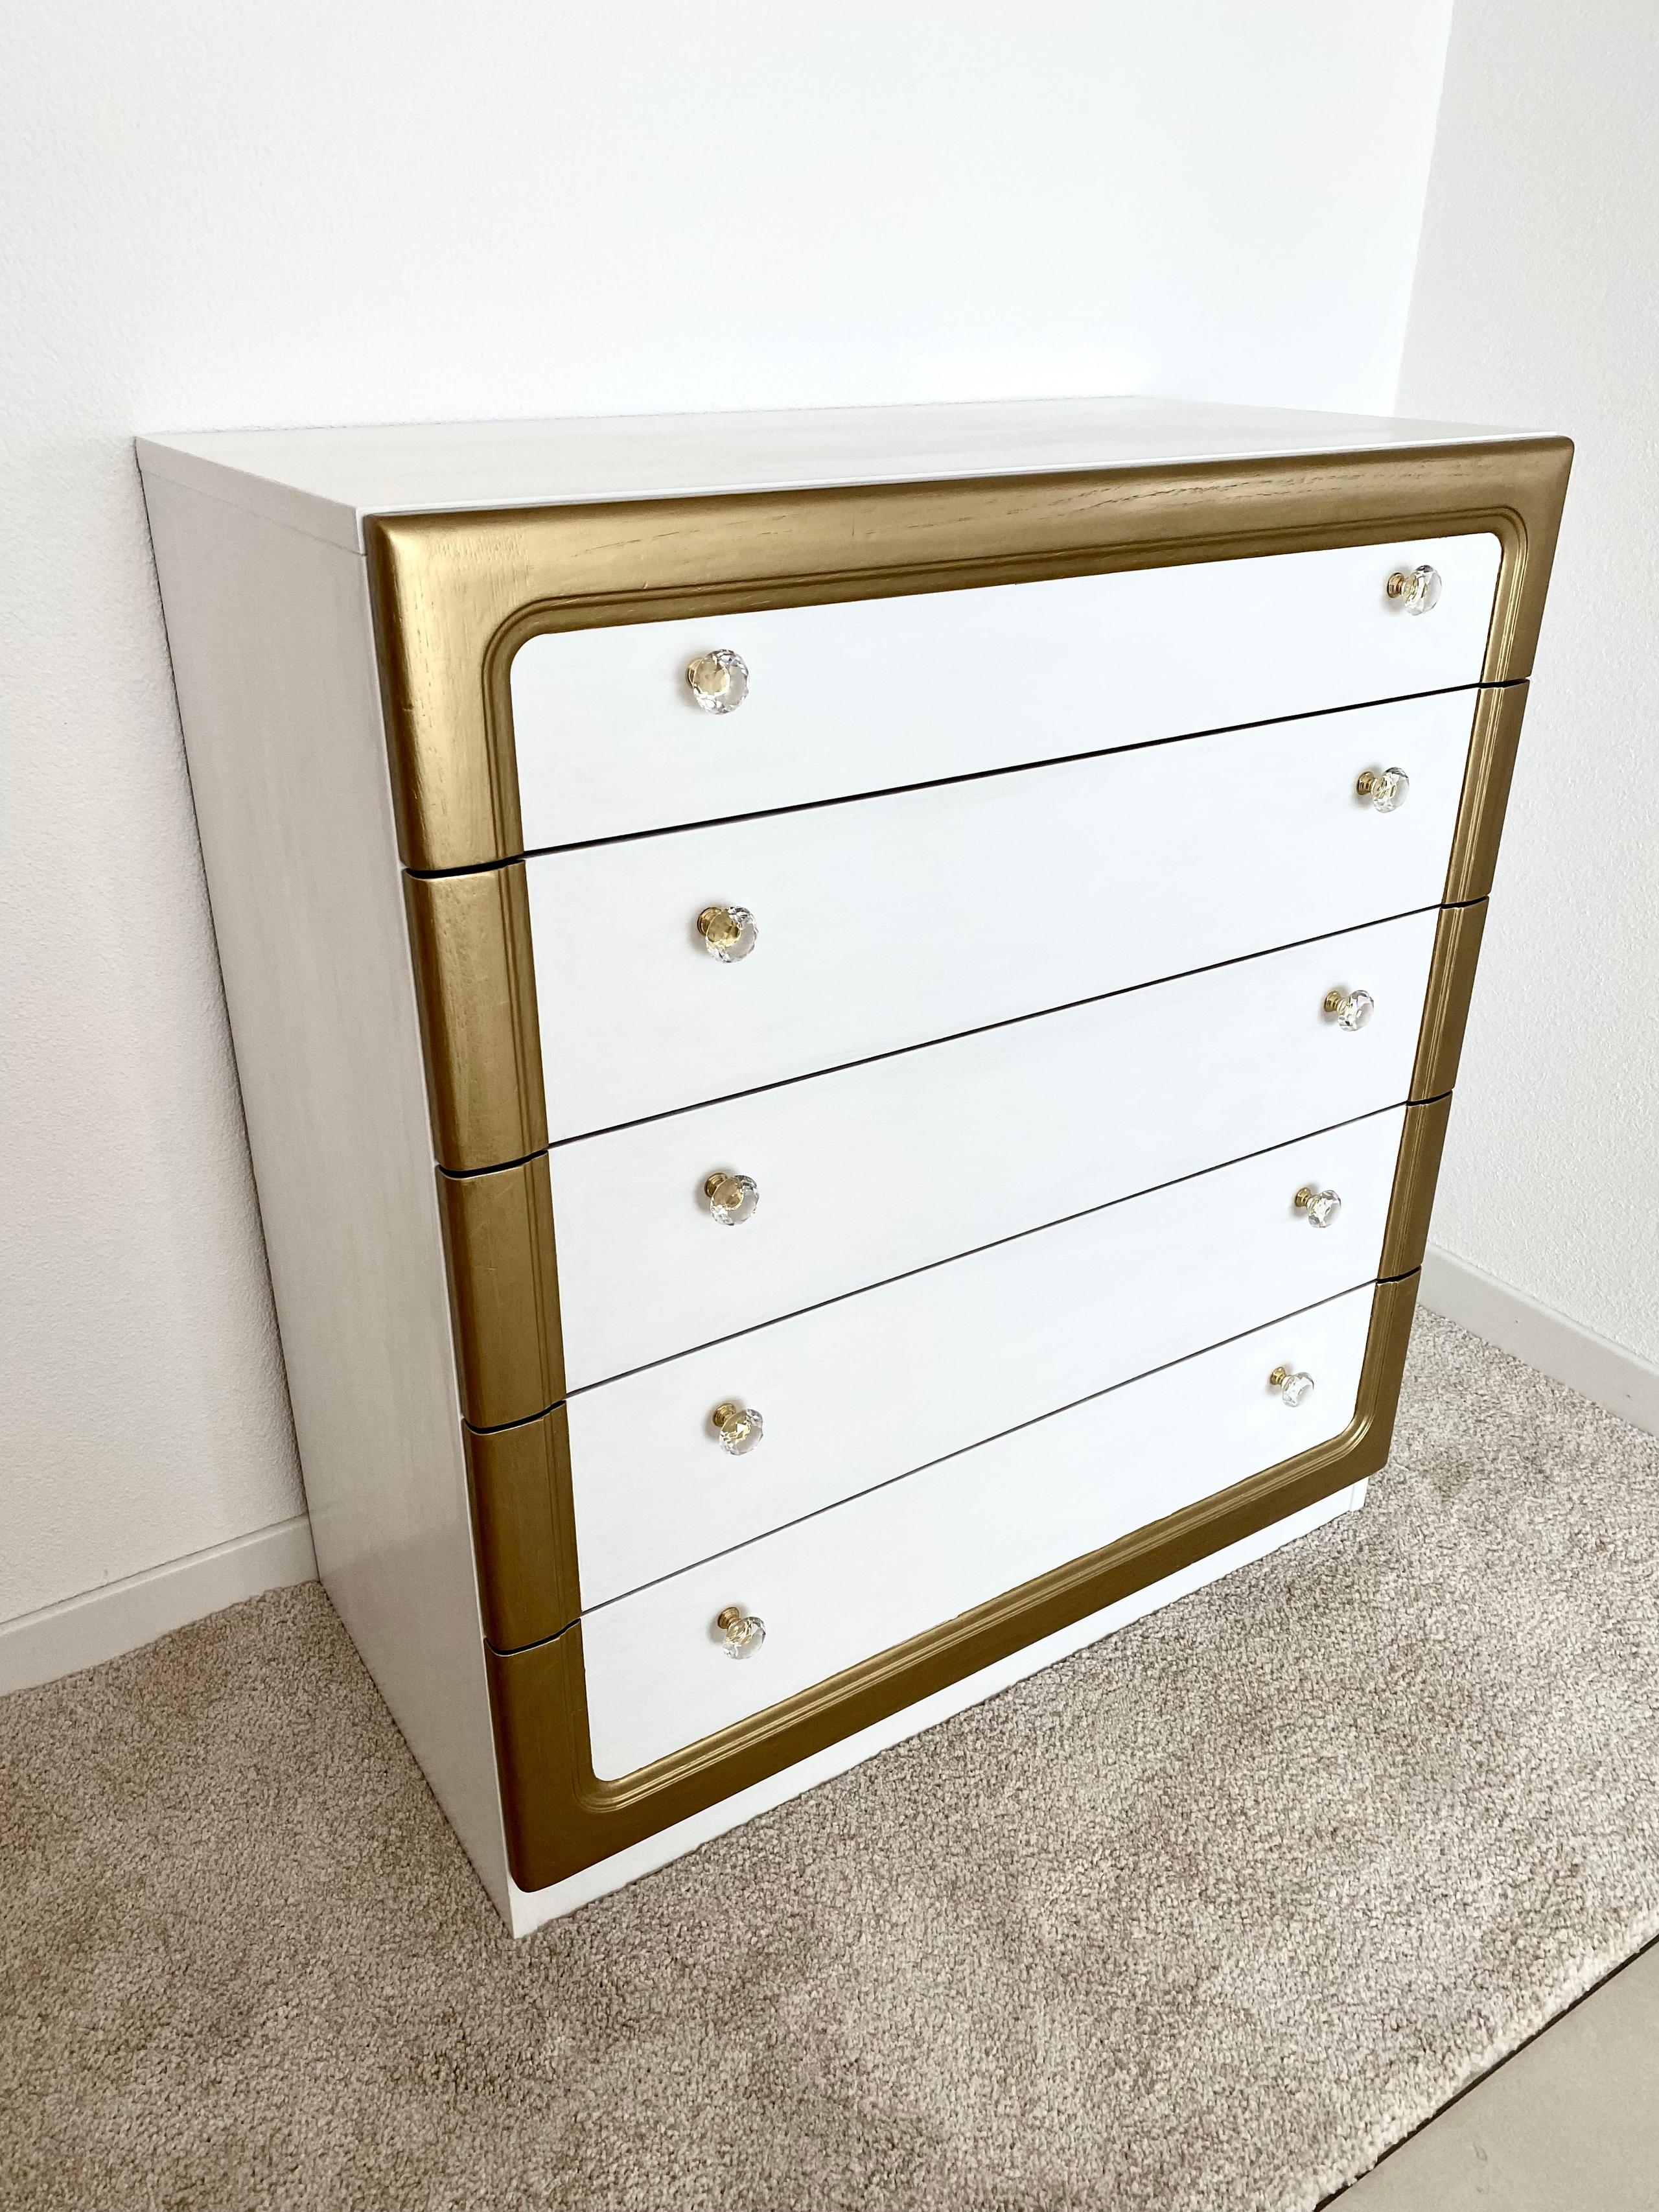 Cassettiera Bianco Oro,White Gold Dresser,Arredamento,Furniture,Elisa Berger Design Studio Lugano